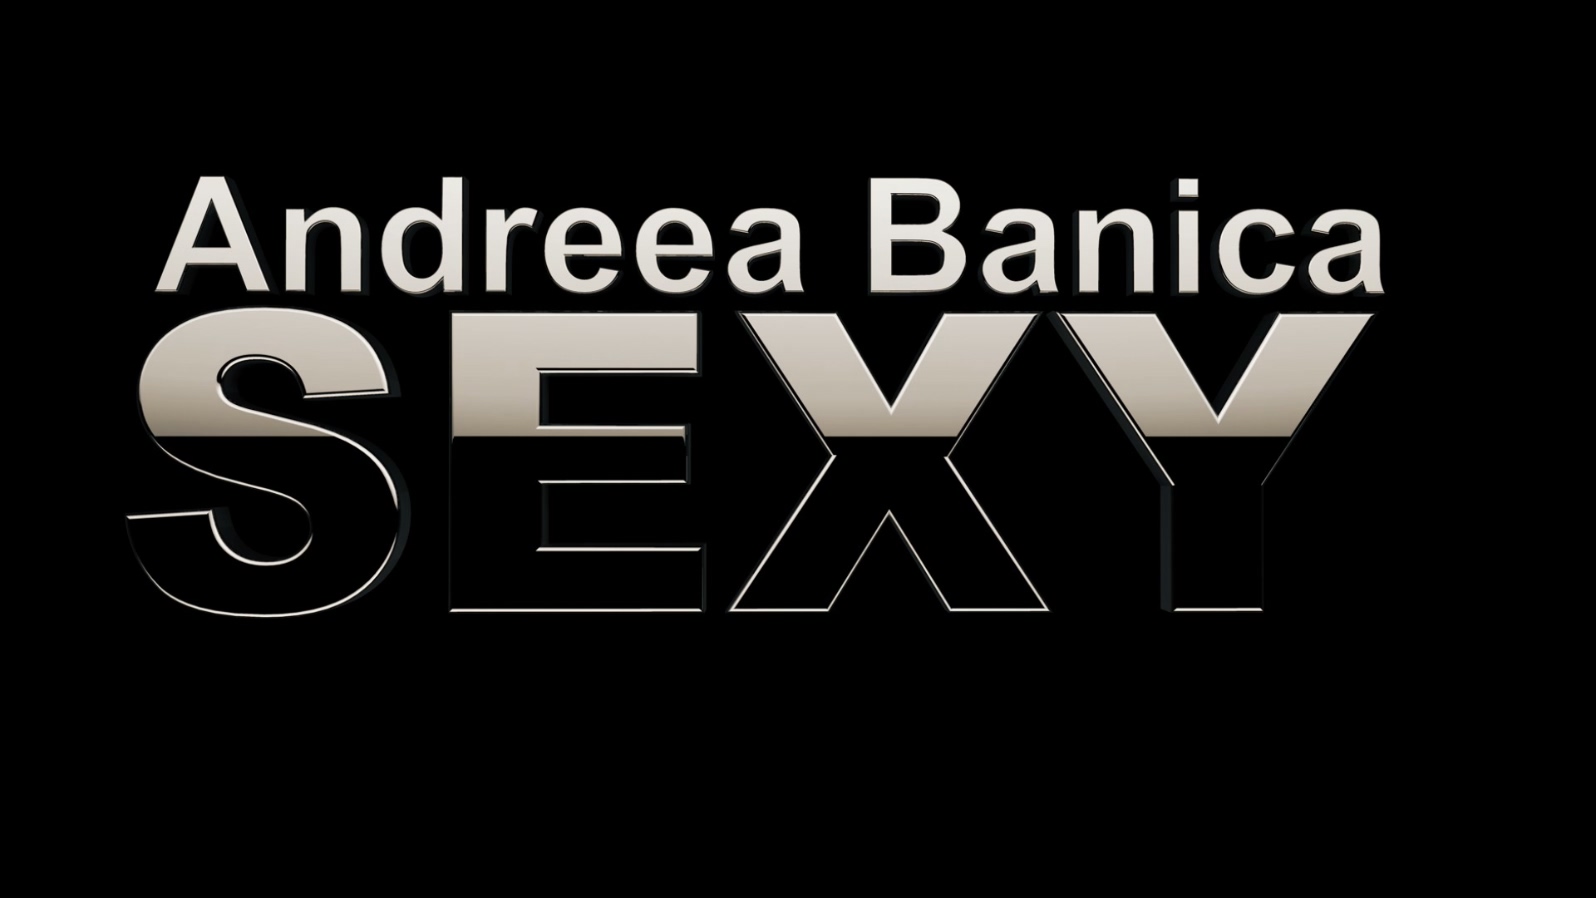 Andreea Banica - Sexy (LPCM-Maste